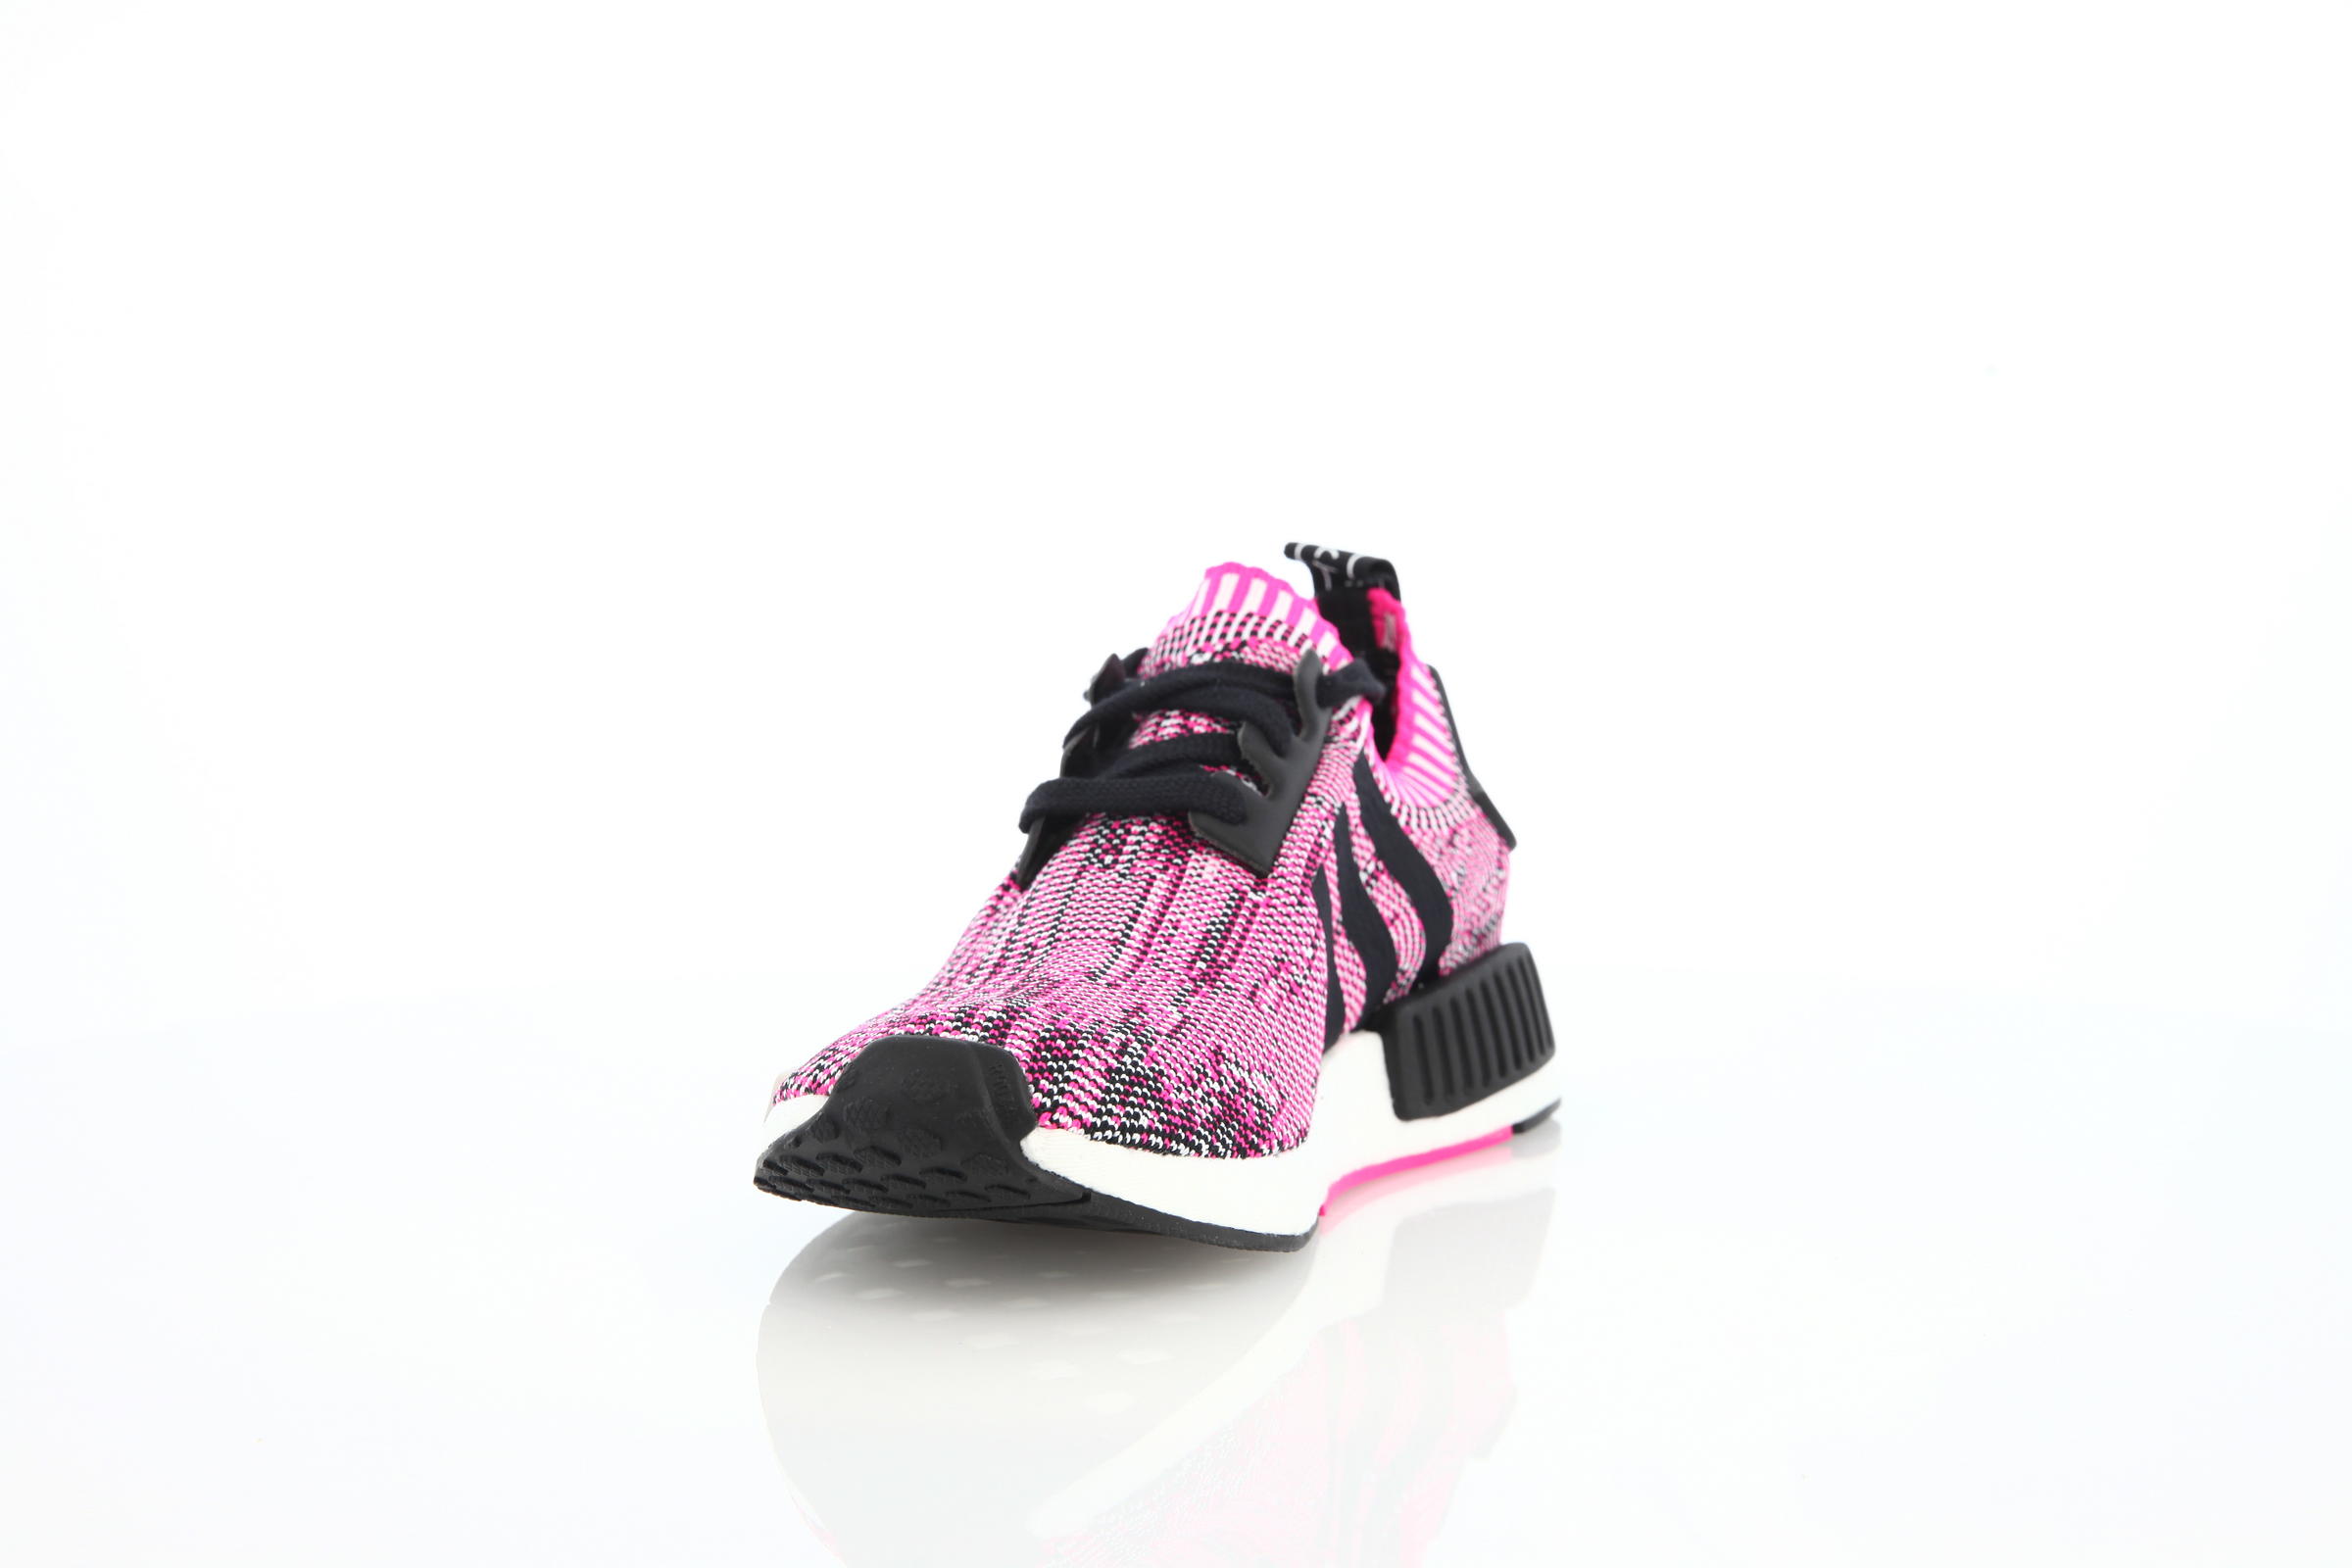 adidas Originals Nmd R1 Boost Runner W Primeknit "Shock Pink"